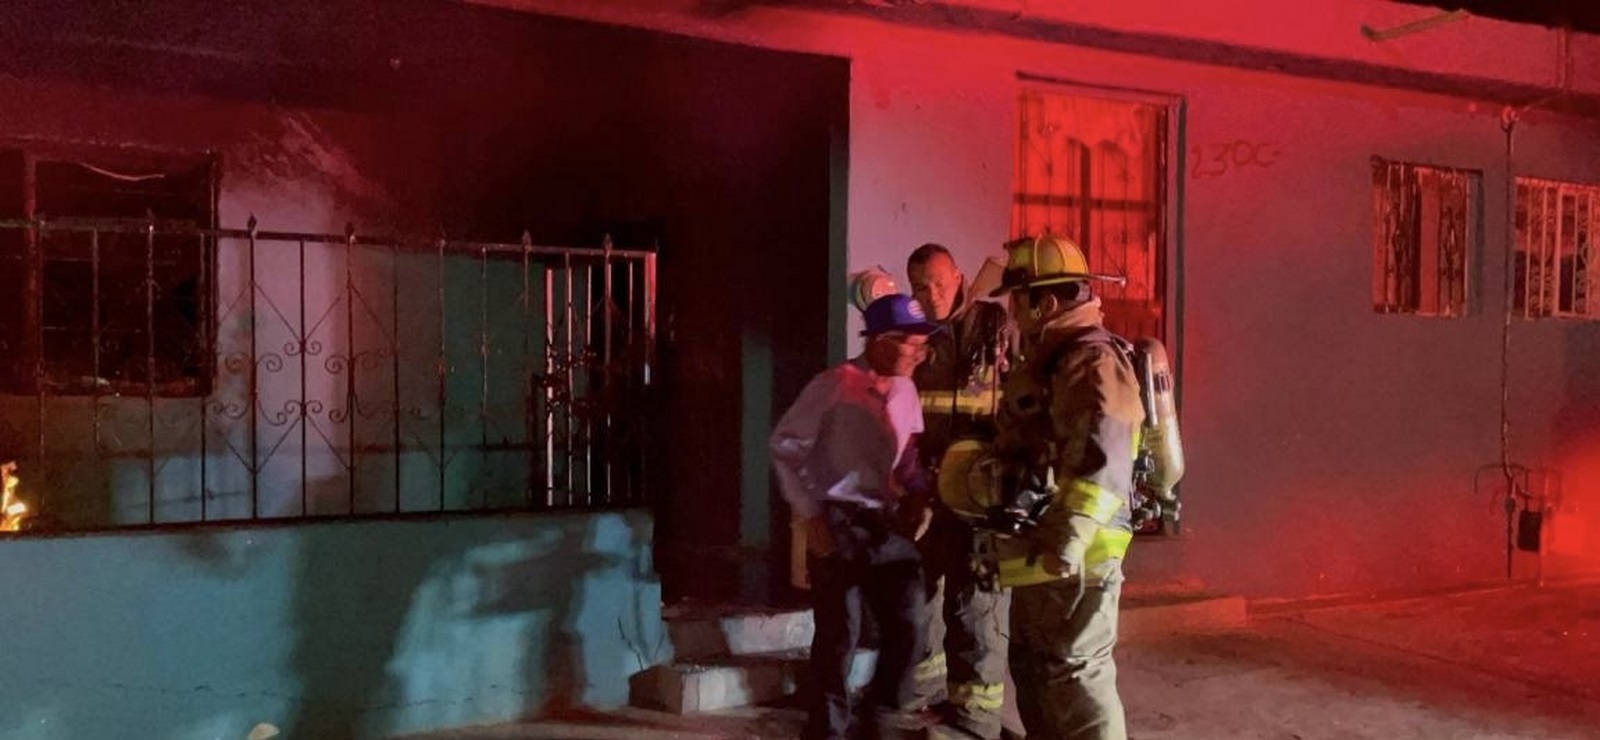 Drogadicto agrede y quema casa de vecinos en Saltillo